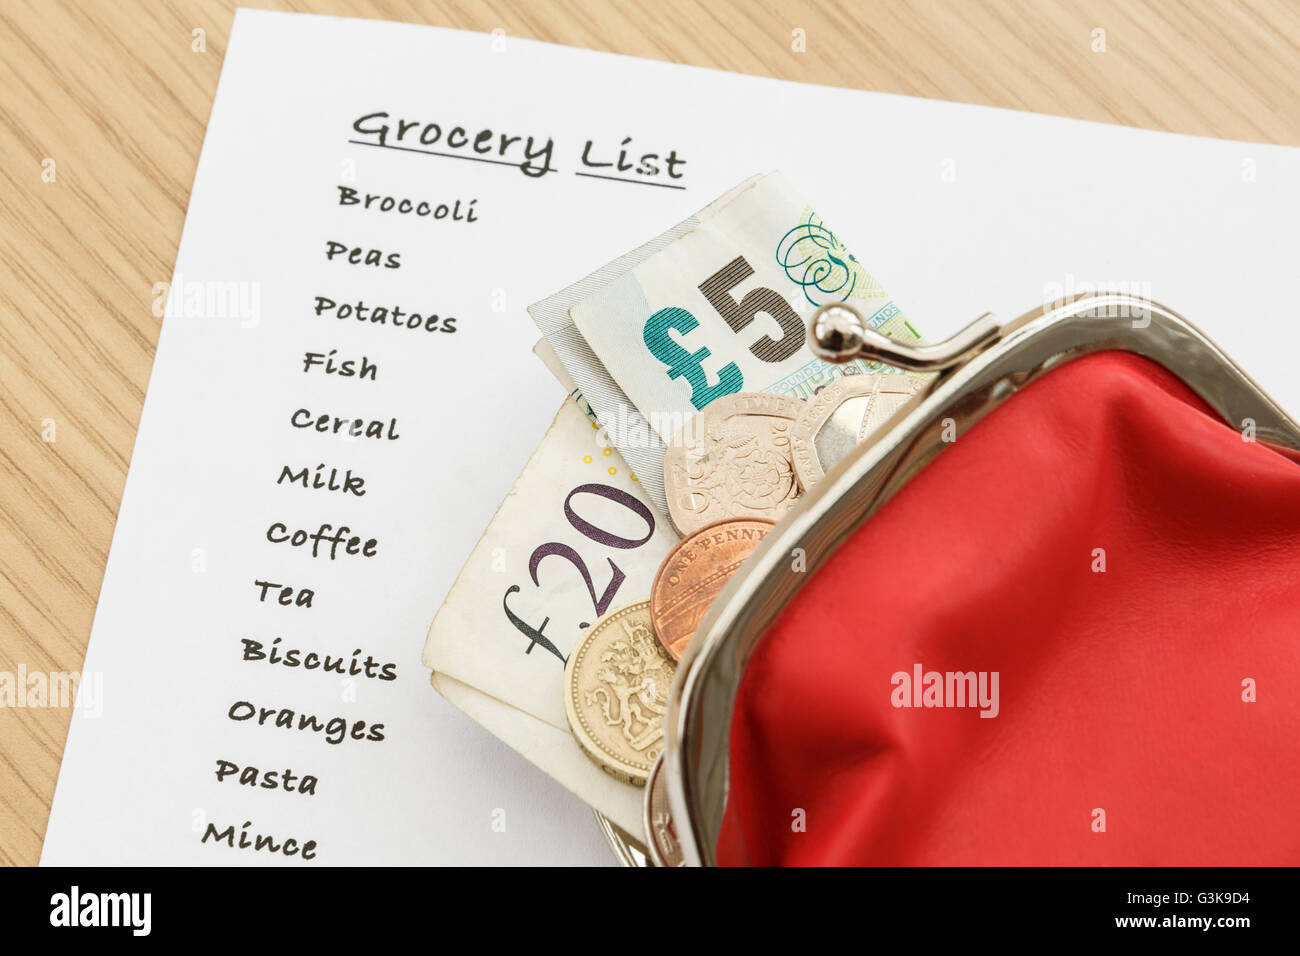 Lista della spesa per i generi alimentari con sterling soldi contanti GBP in una borsa da sopra. Inghilterra, Regno Unito, Gran Bretagna Foto Stock